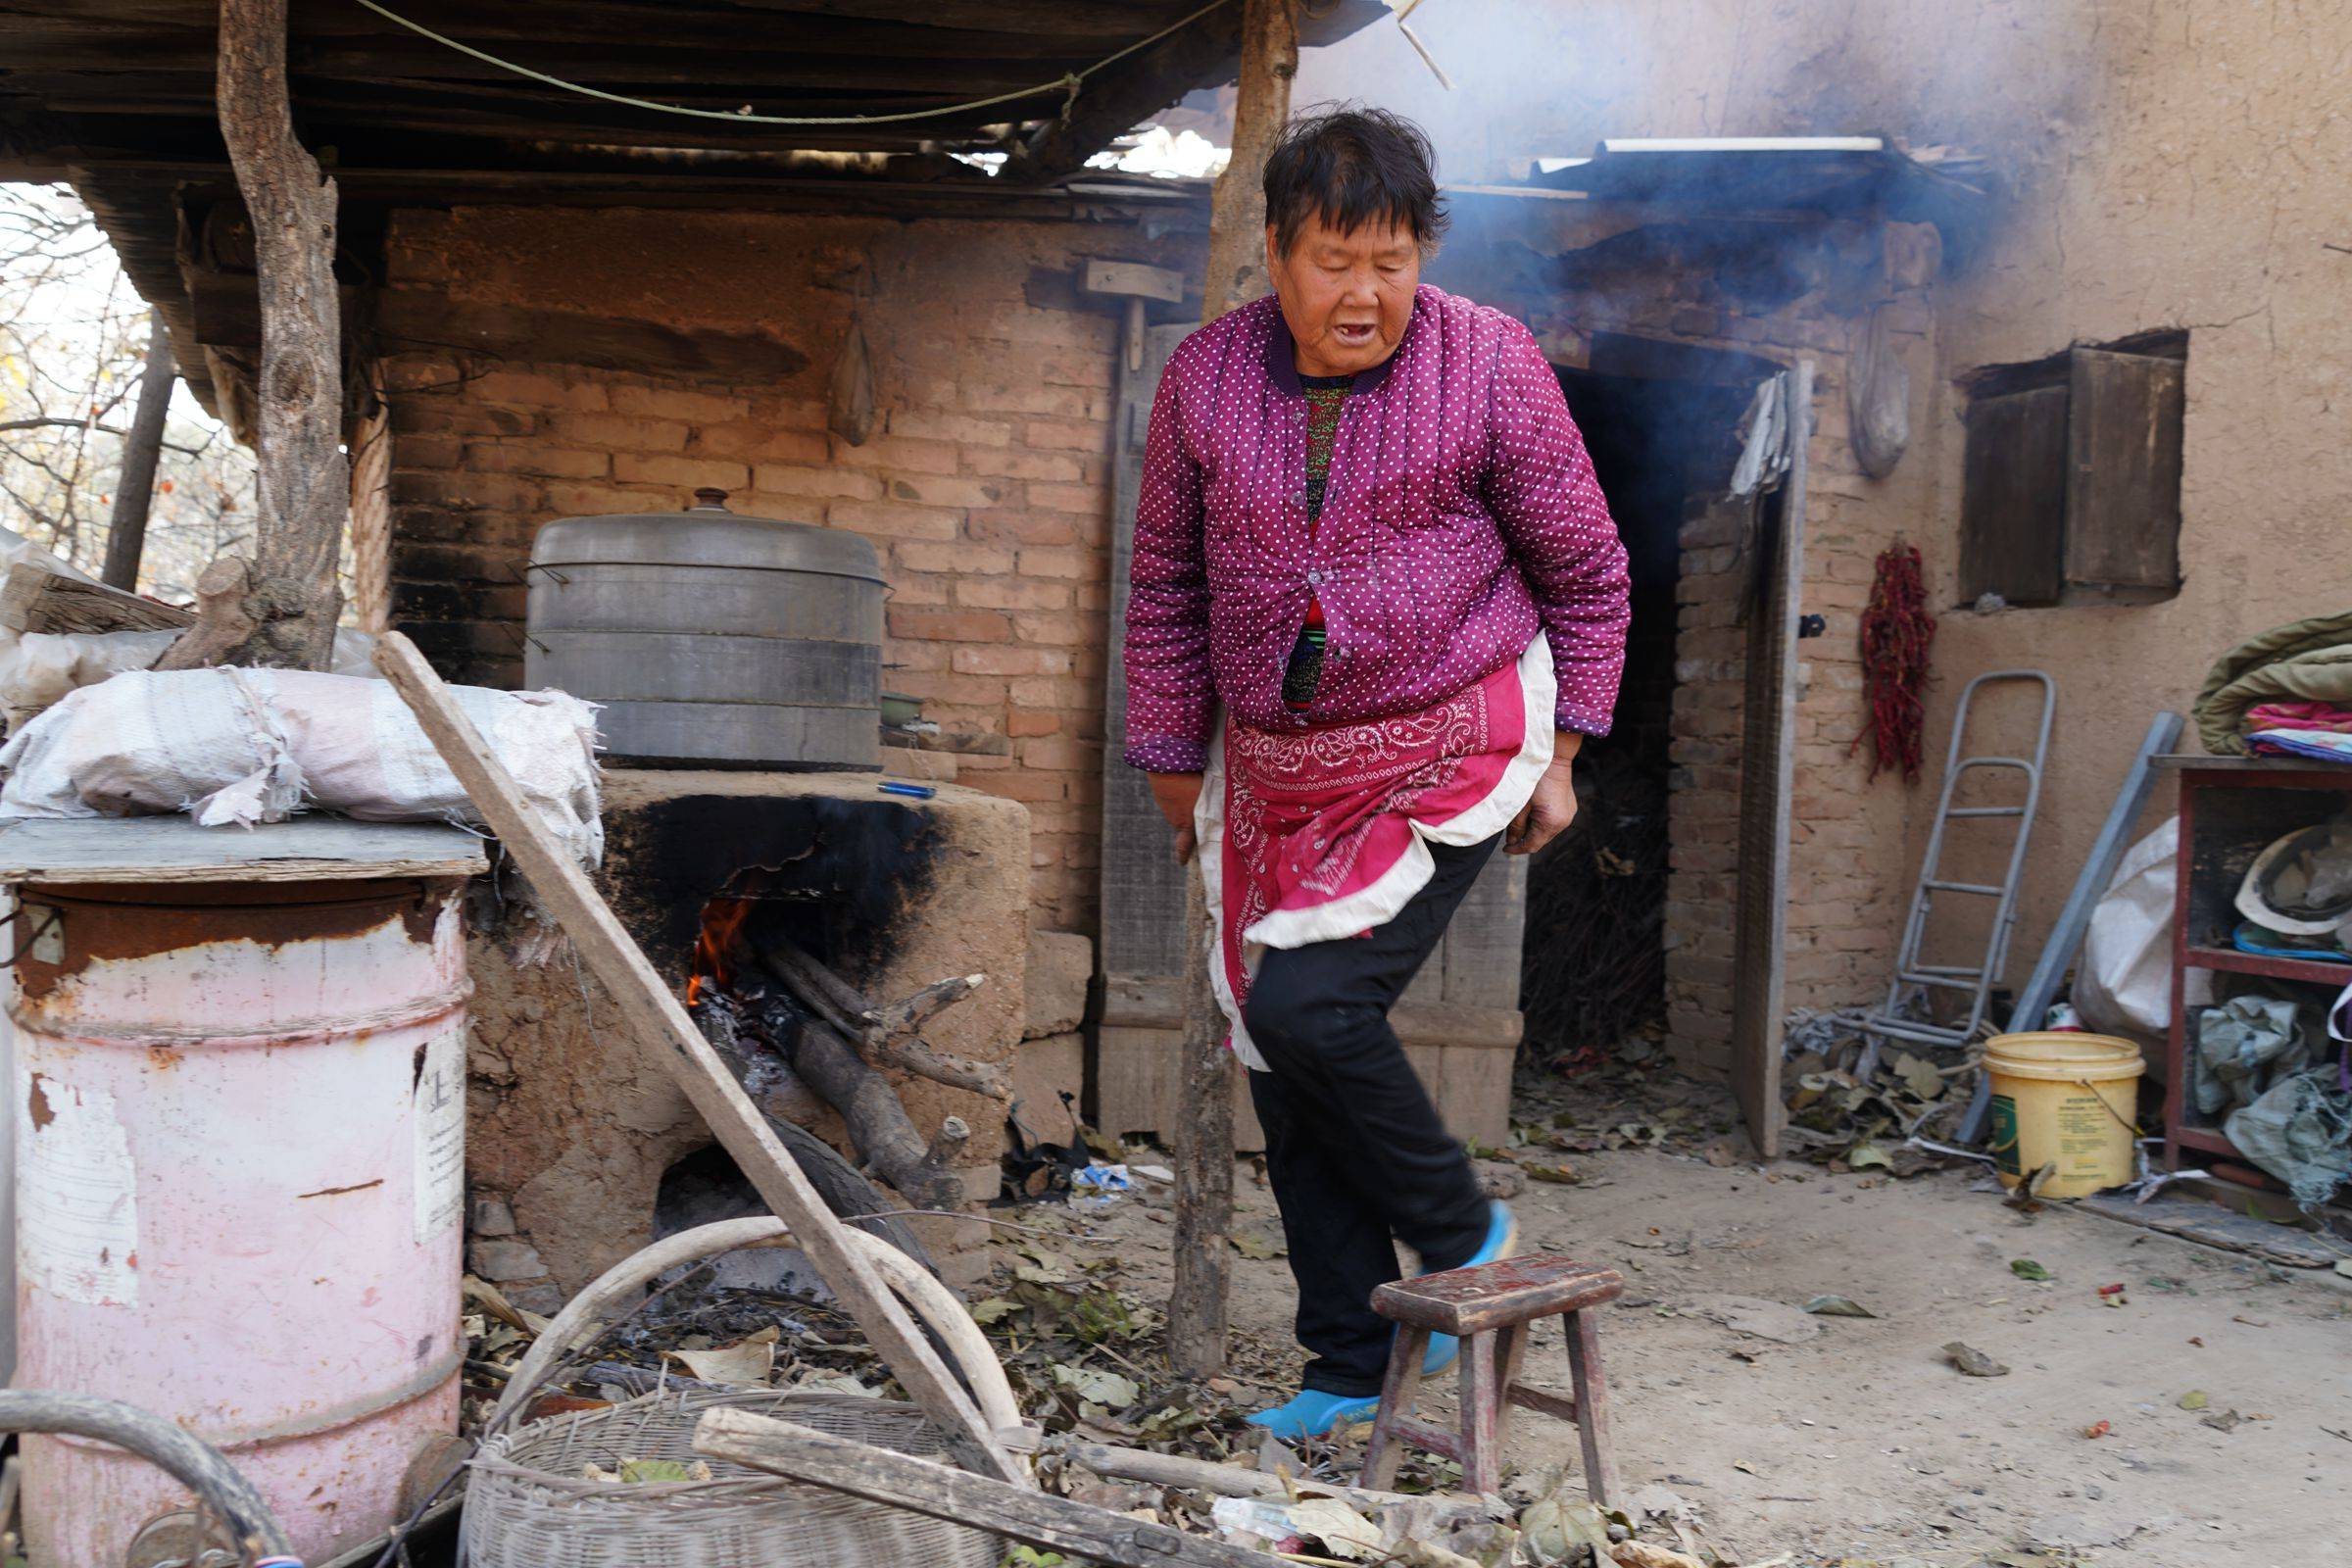 到河南省豫西农村采风,公路边我们看到了在地坑院子上边做饭的李大妈